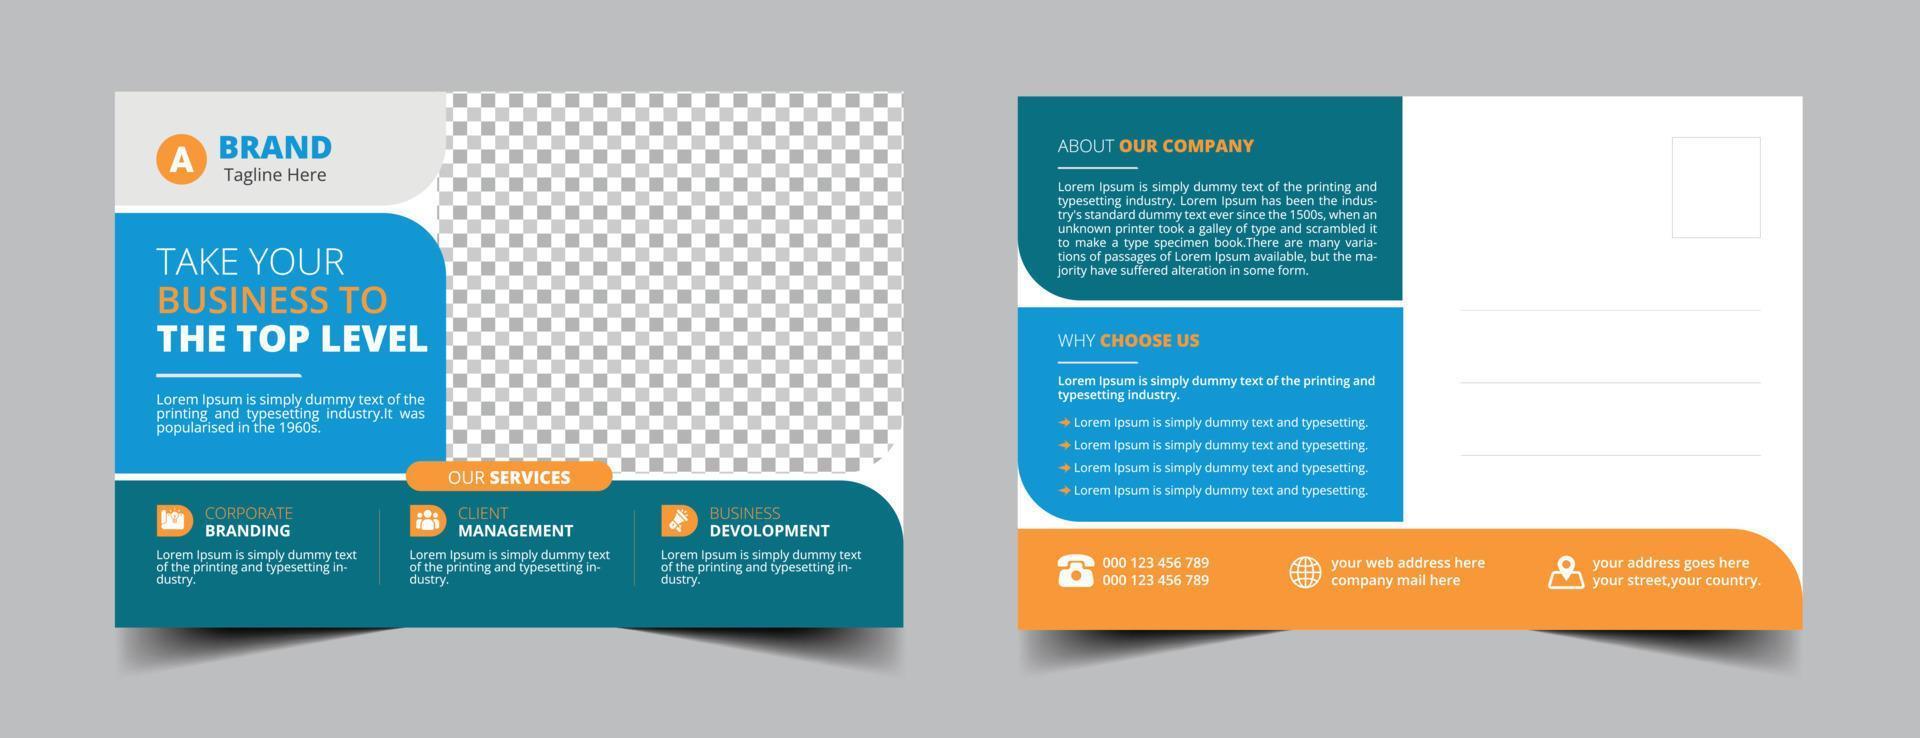 Firmenpostkarten-Vorlagendesign vektor